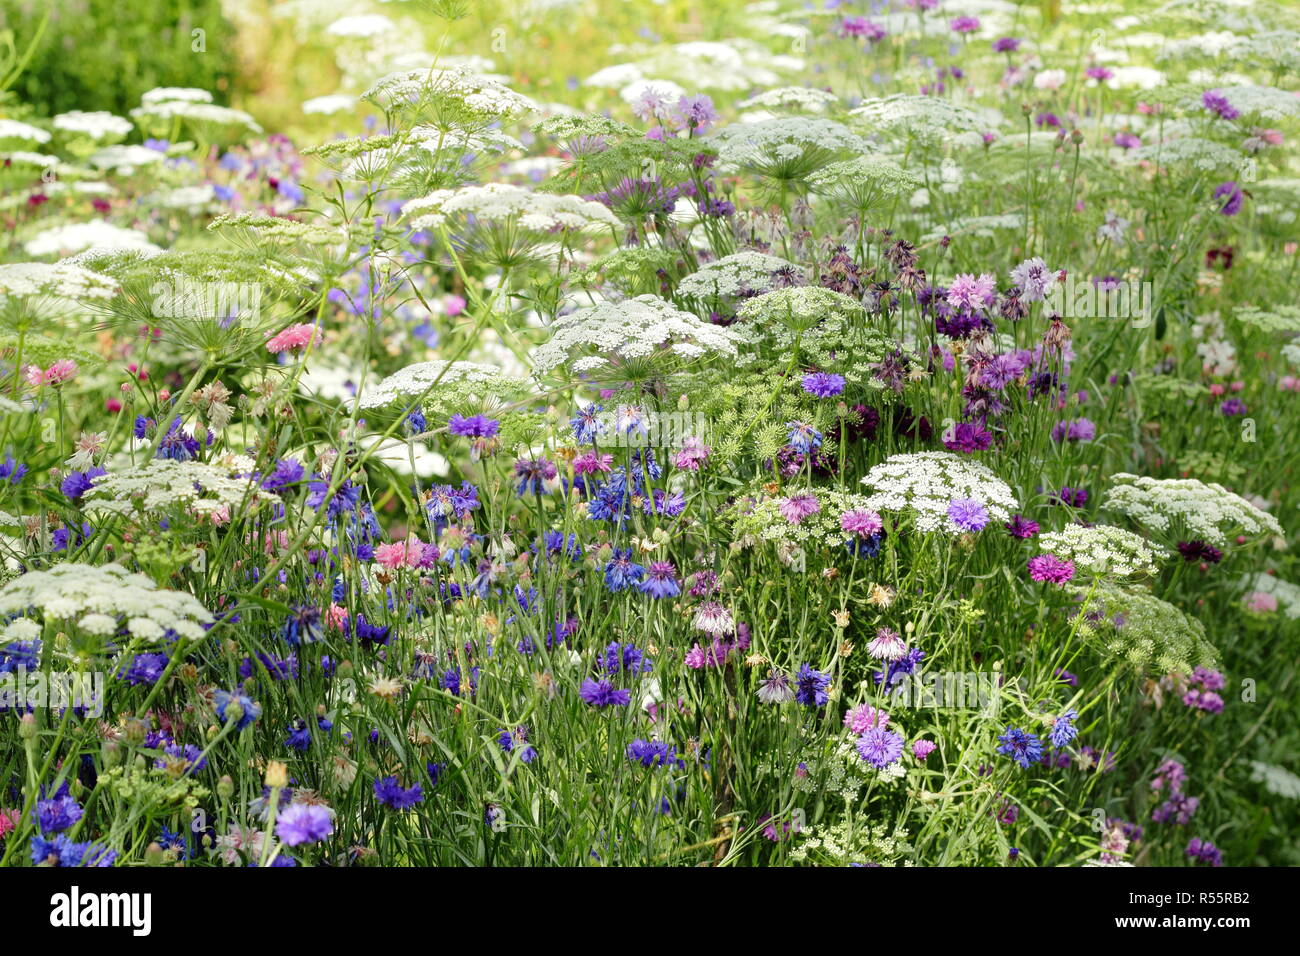 Affichage de l'été des fleurs à couper dans 'l'Pickery' à Easton Walled Garden, Easton, Lincolnshire, Angleterre, Royaume-Uni. Ammi majus, barbeaux et plus encore. Banque D'Images